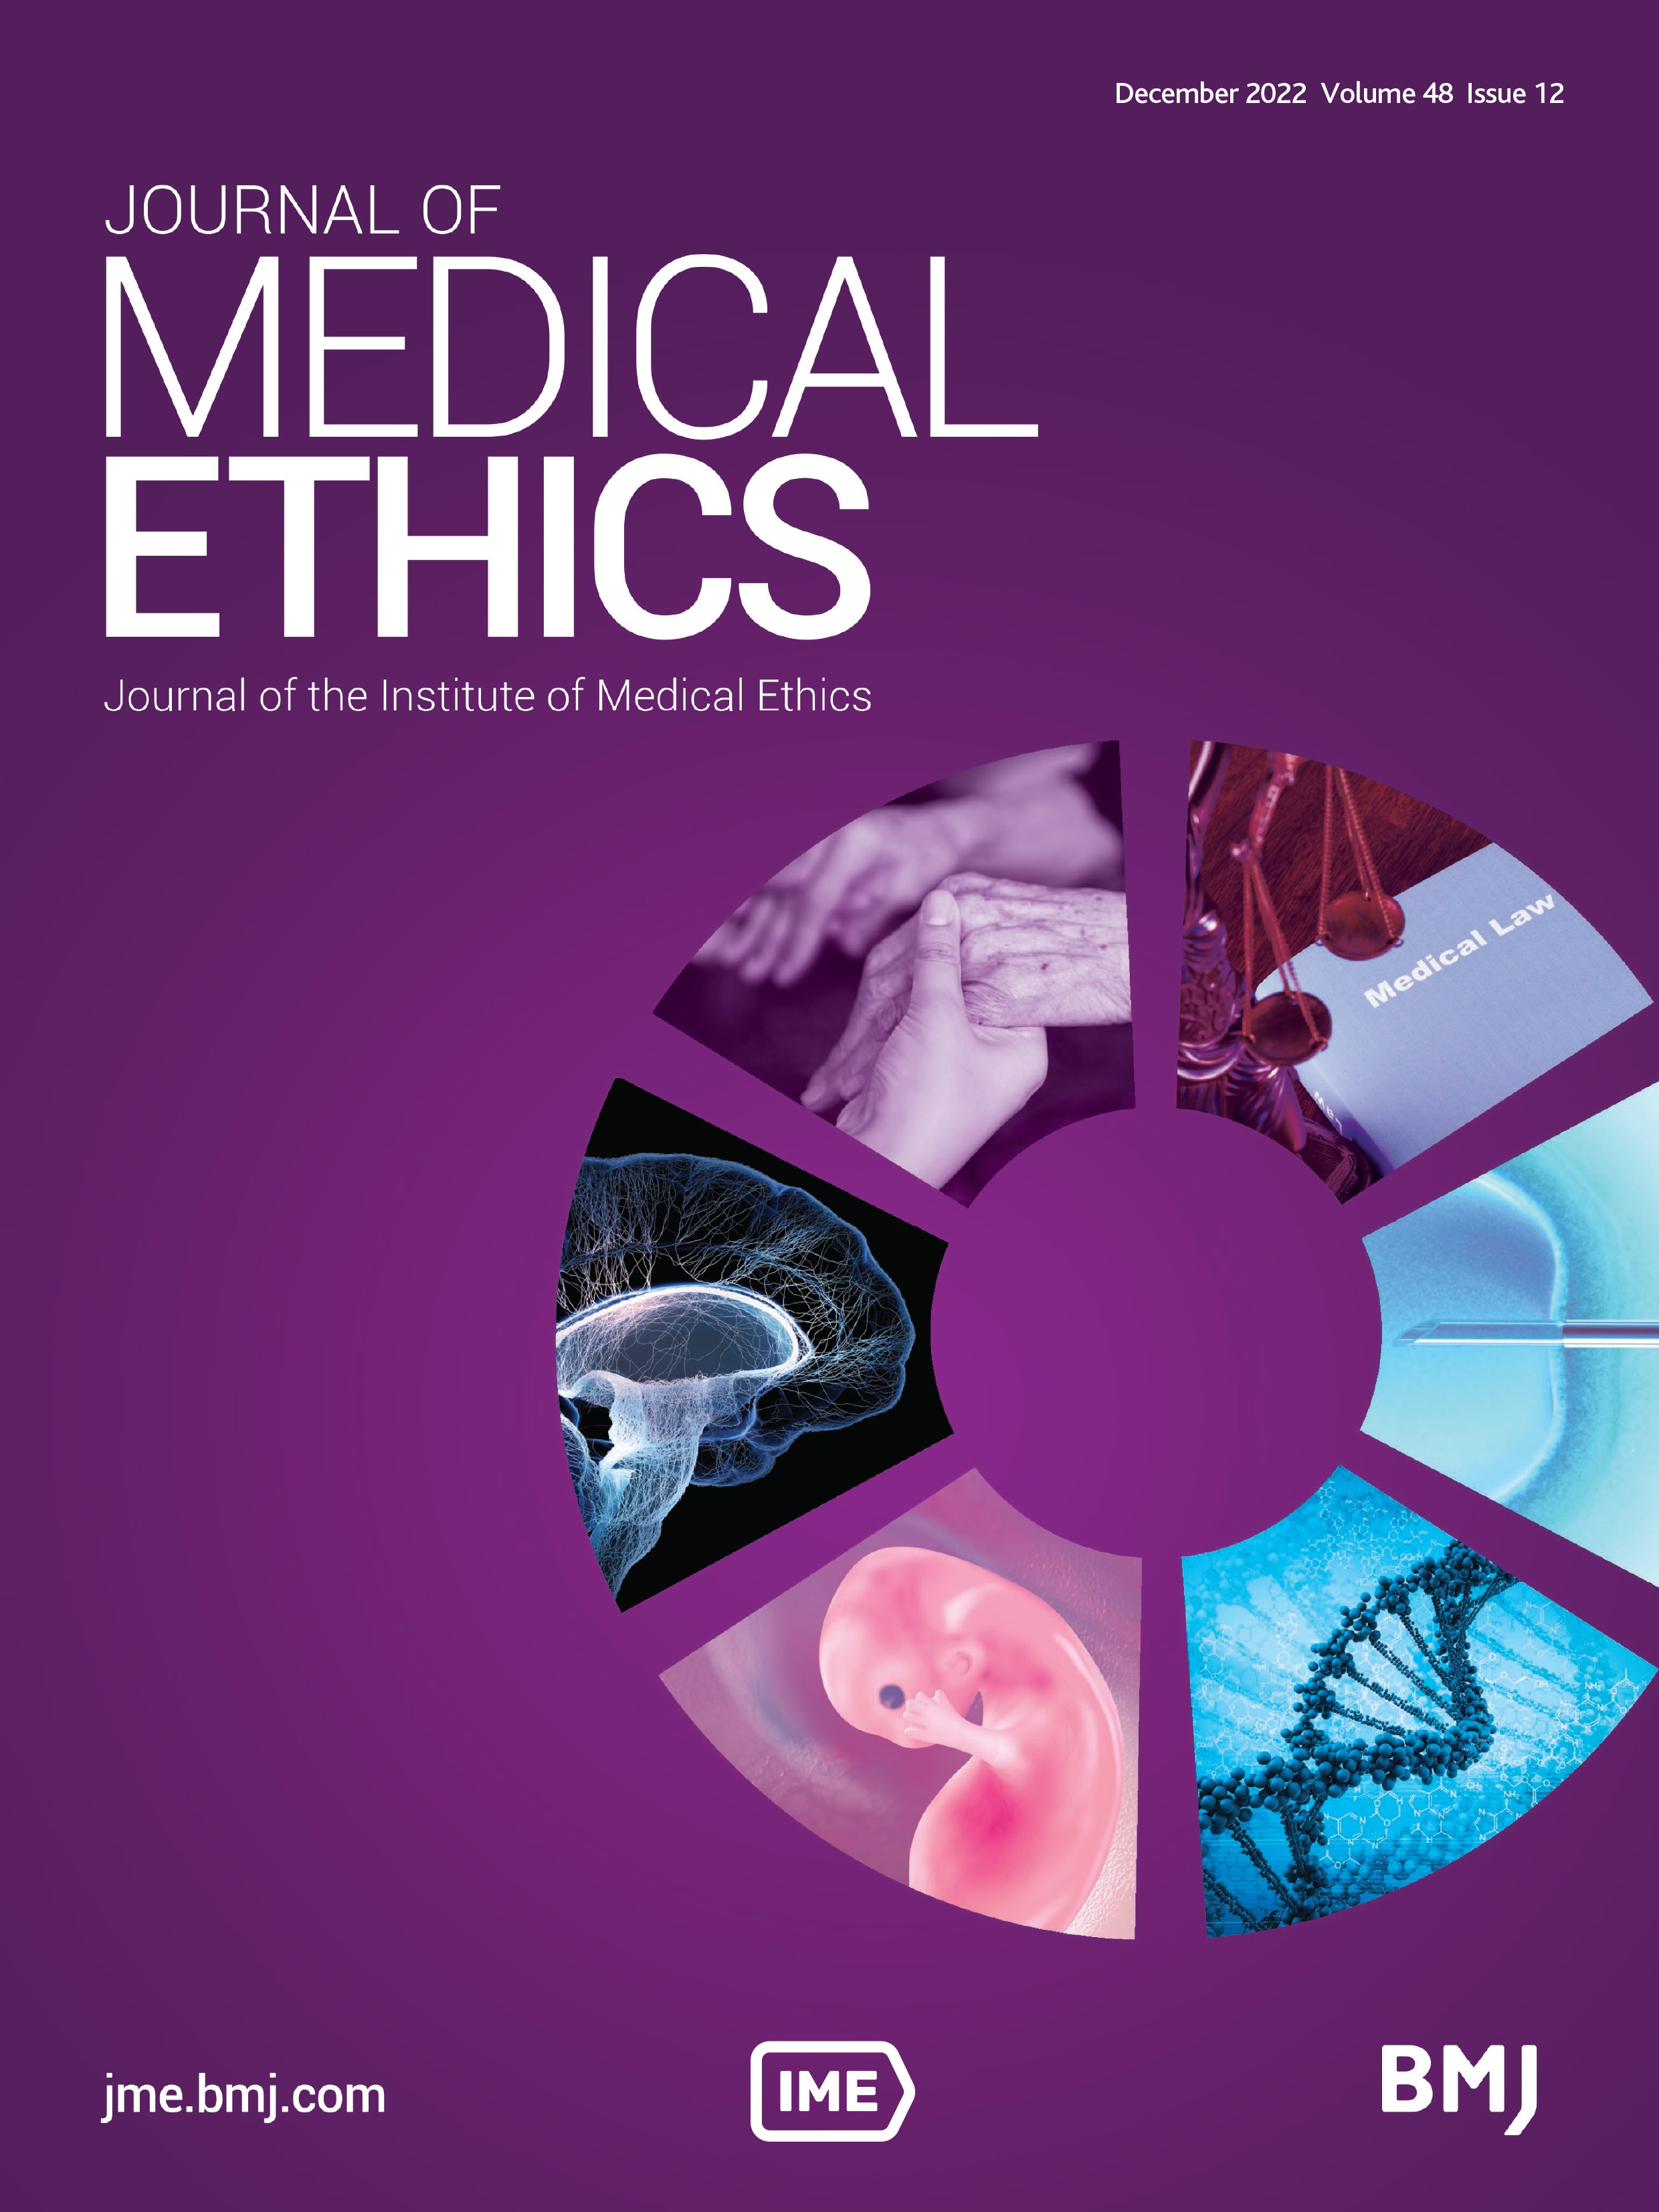 The ethics of semantics in medicine